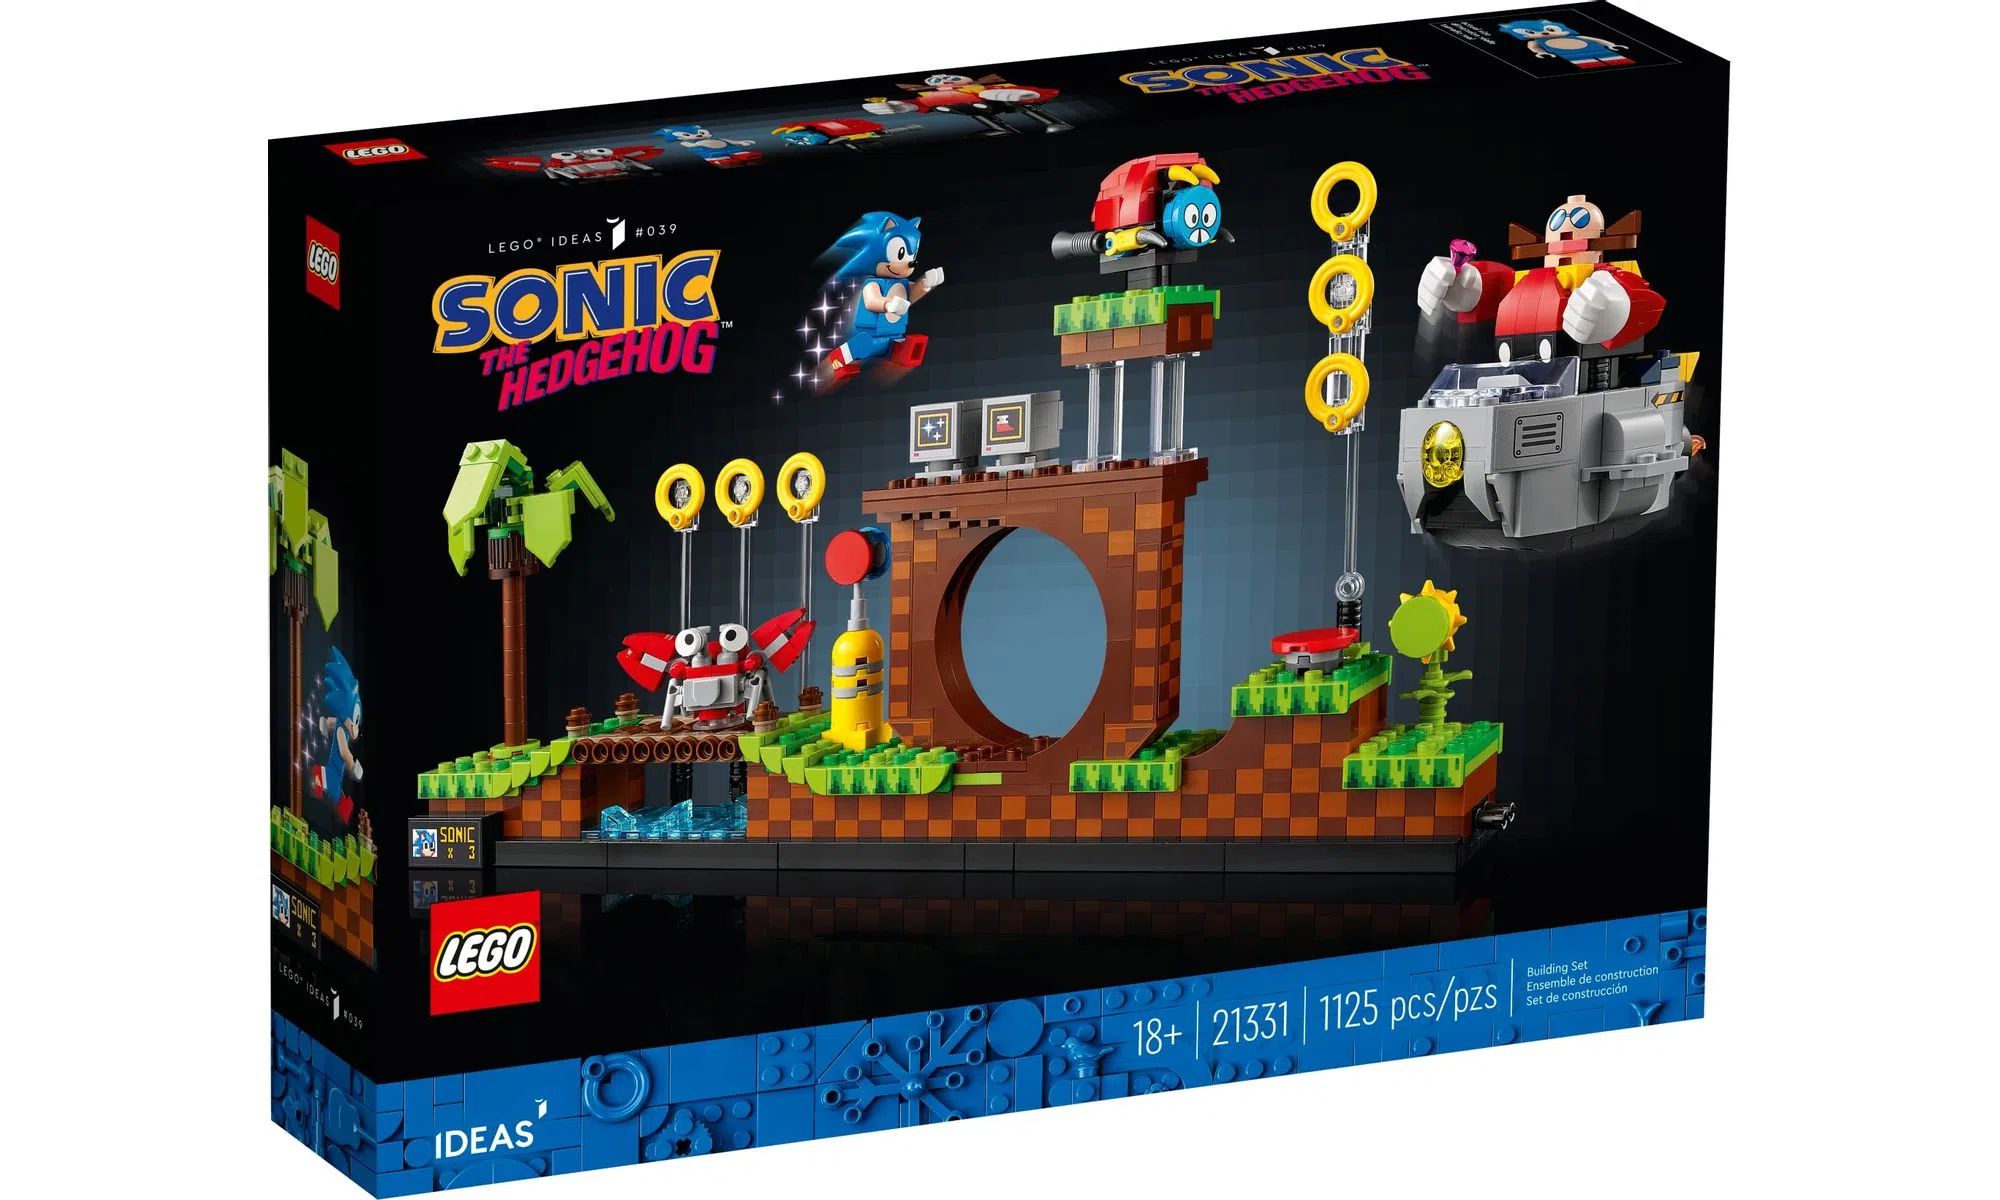 Lego Sonic 76994 - Desafio De Looping Da Zona De Green Hill